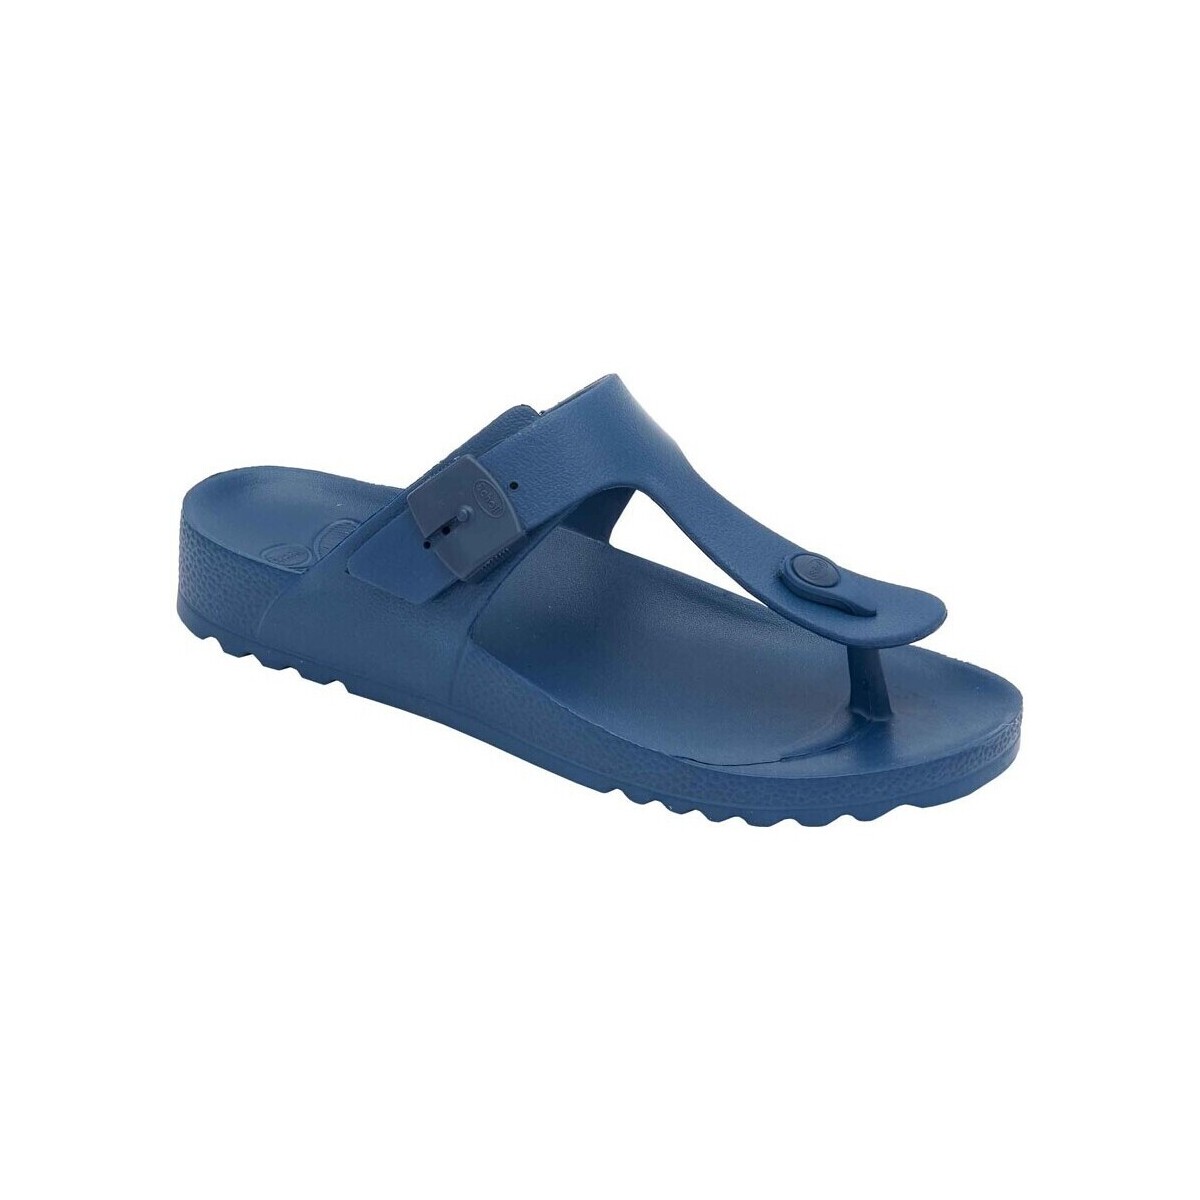 Schoenen Dames Sandalen / Open schoenen Scholl MANDEN  BAHIA FLIP-FLOP Blauw